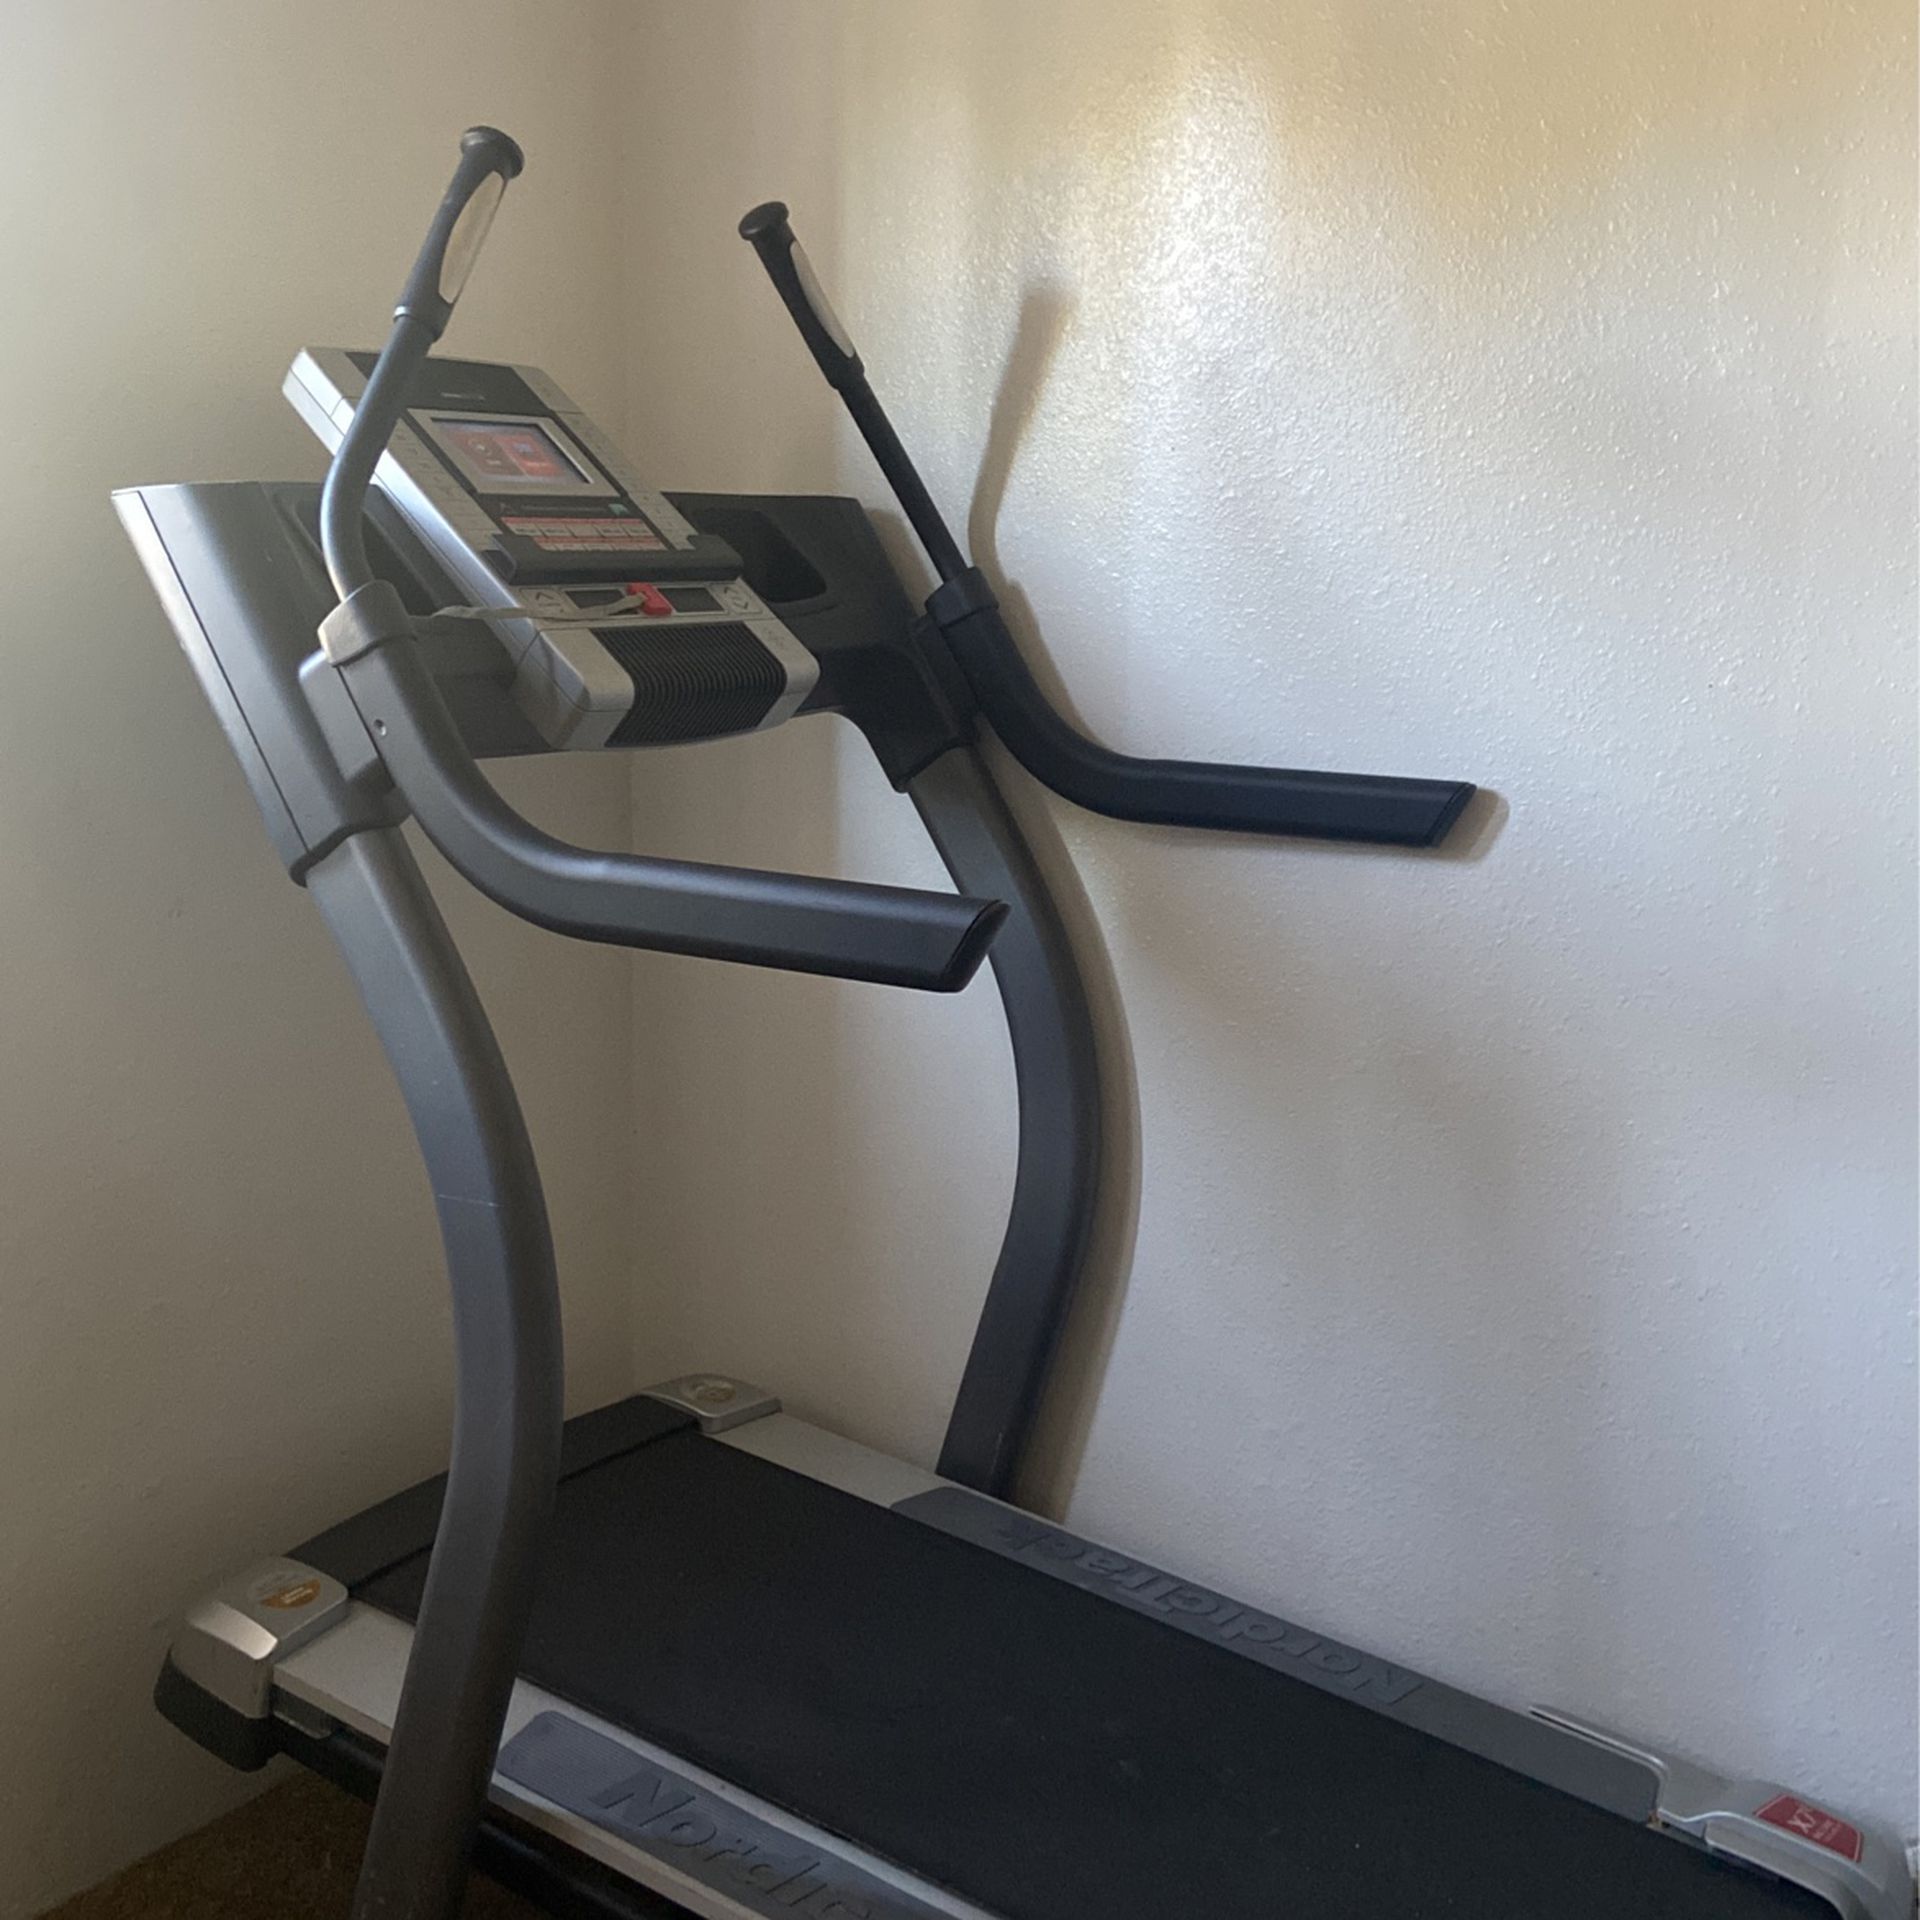 Treadmill- $100